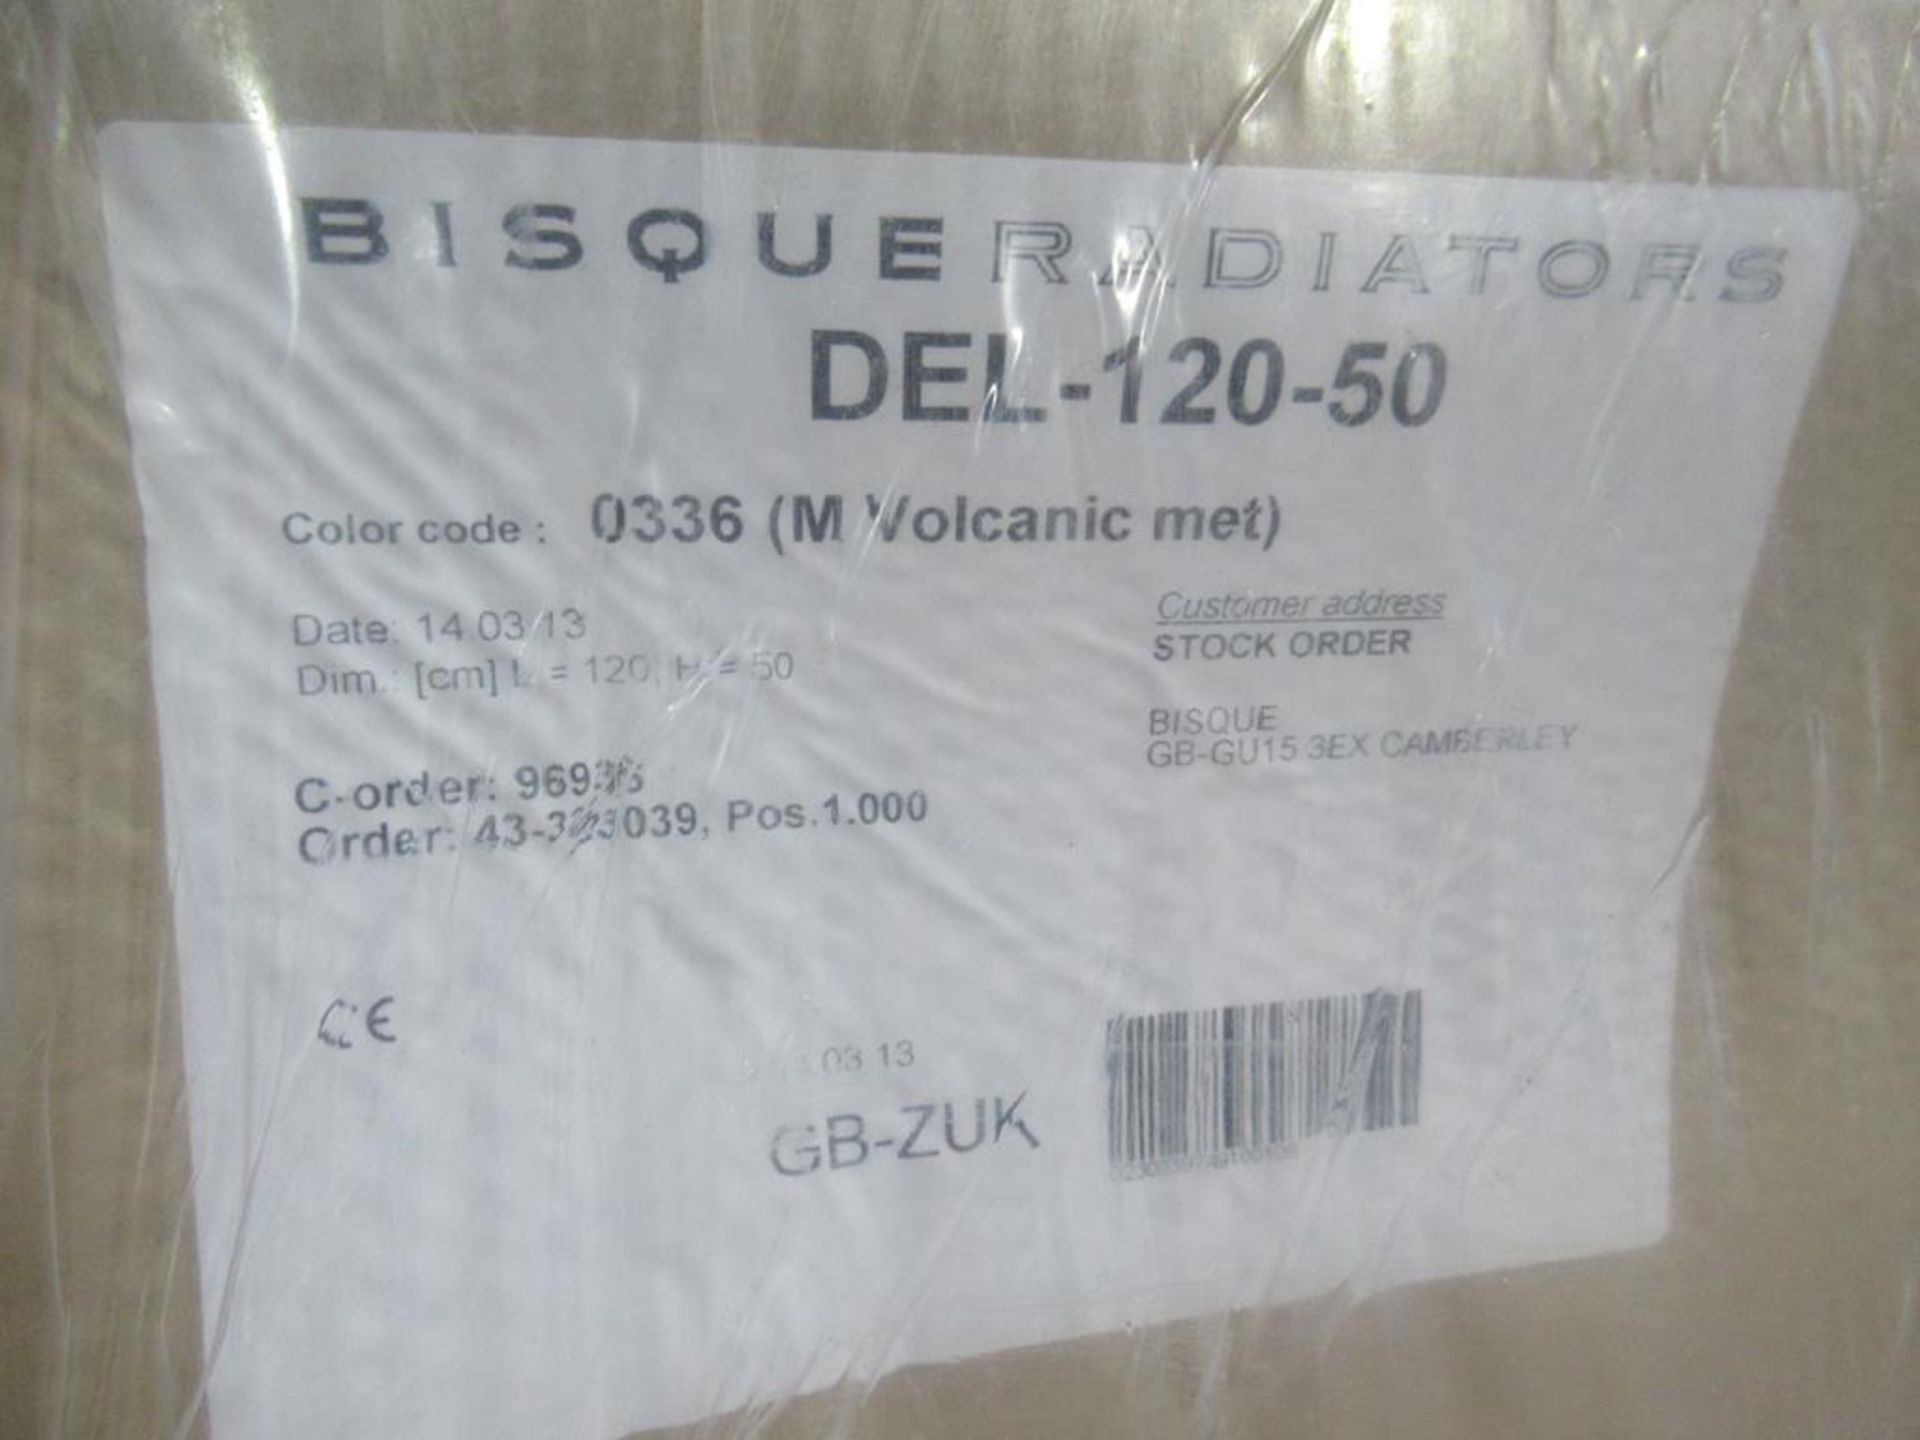 Bisque DEL-120-50 Radiator - Image 3 of 3